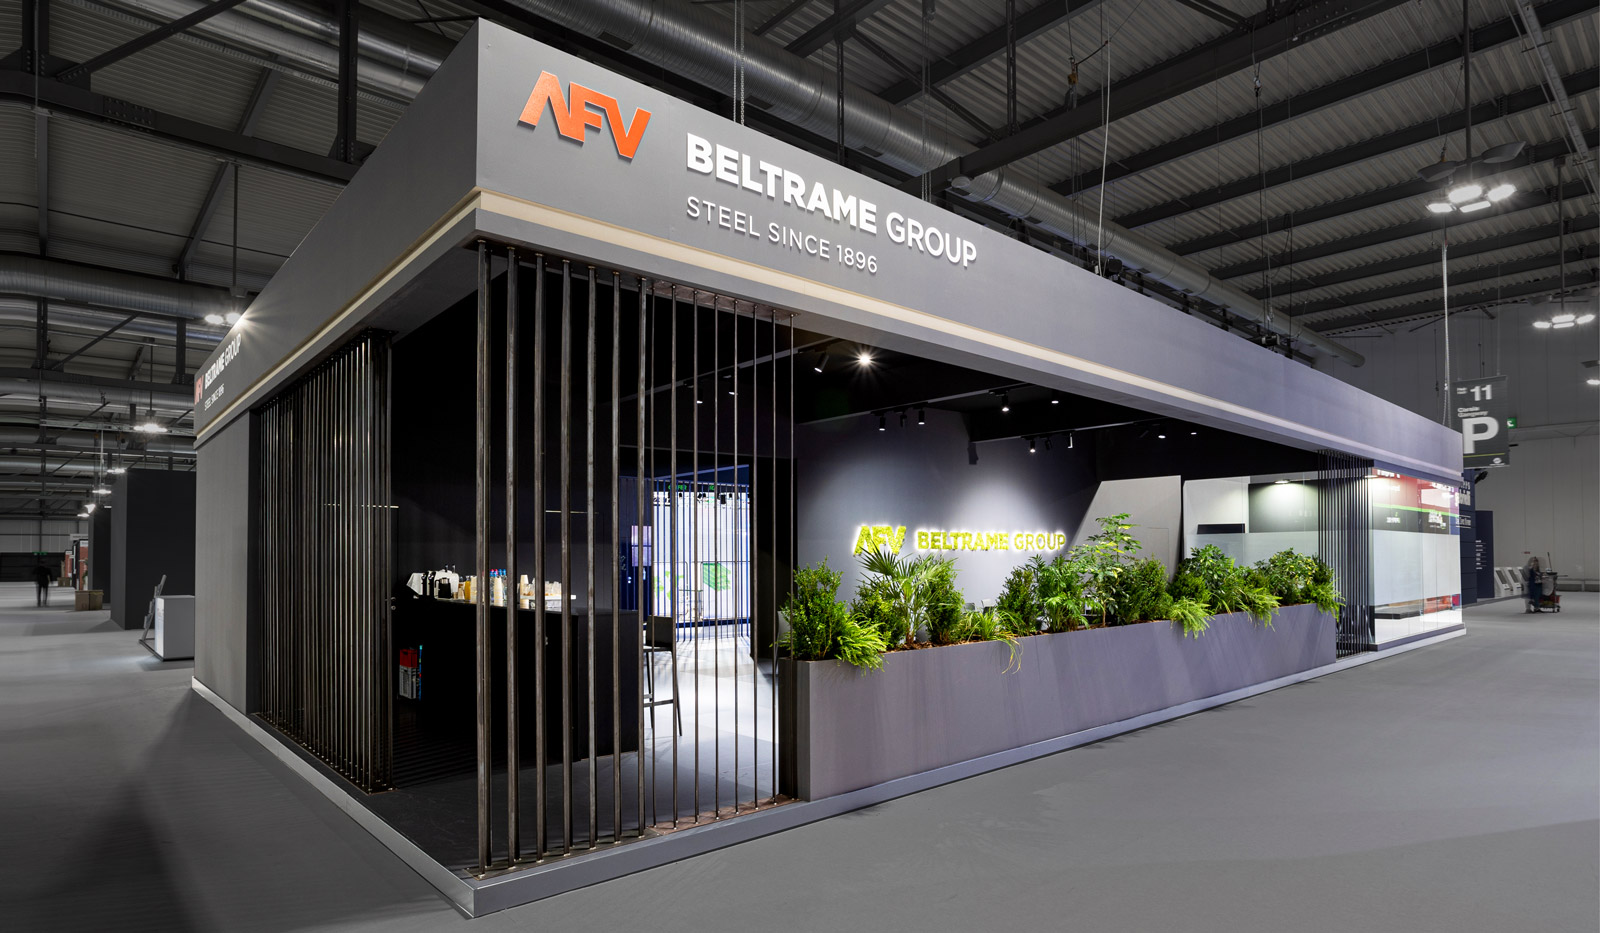 Afv Beltrame Group - Made In Steel 2021, Milan - foto n.02